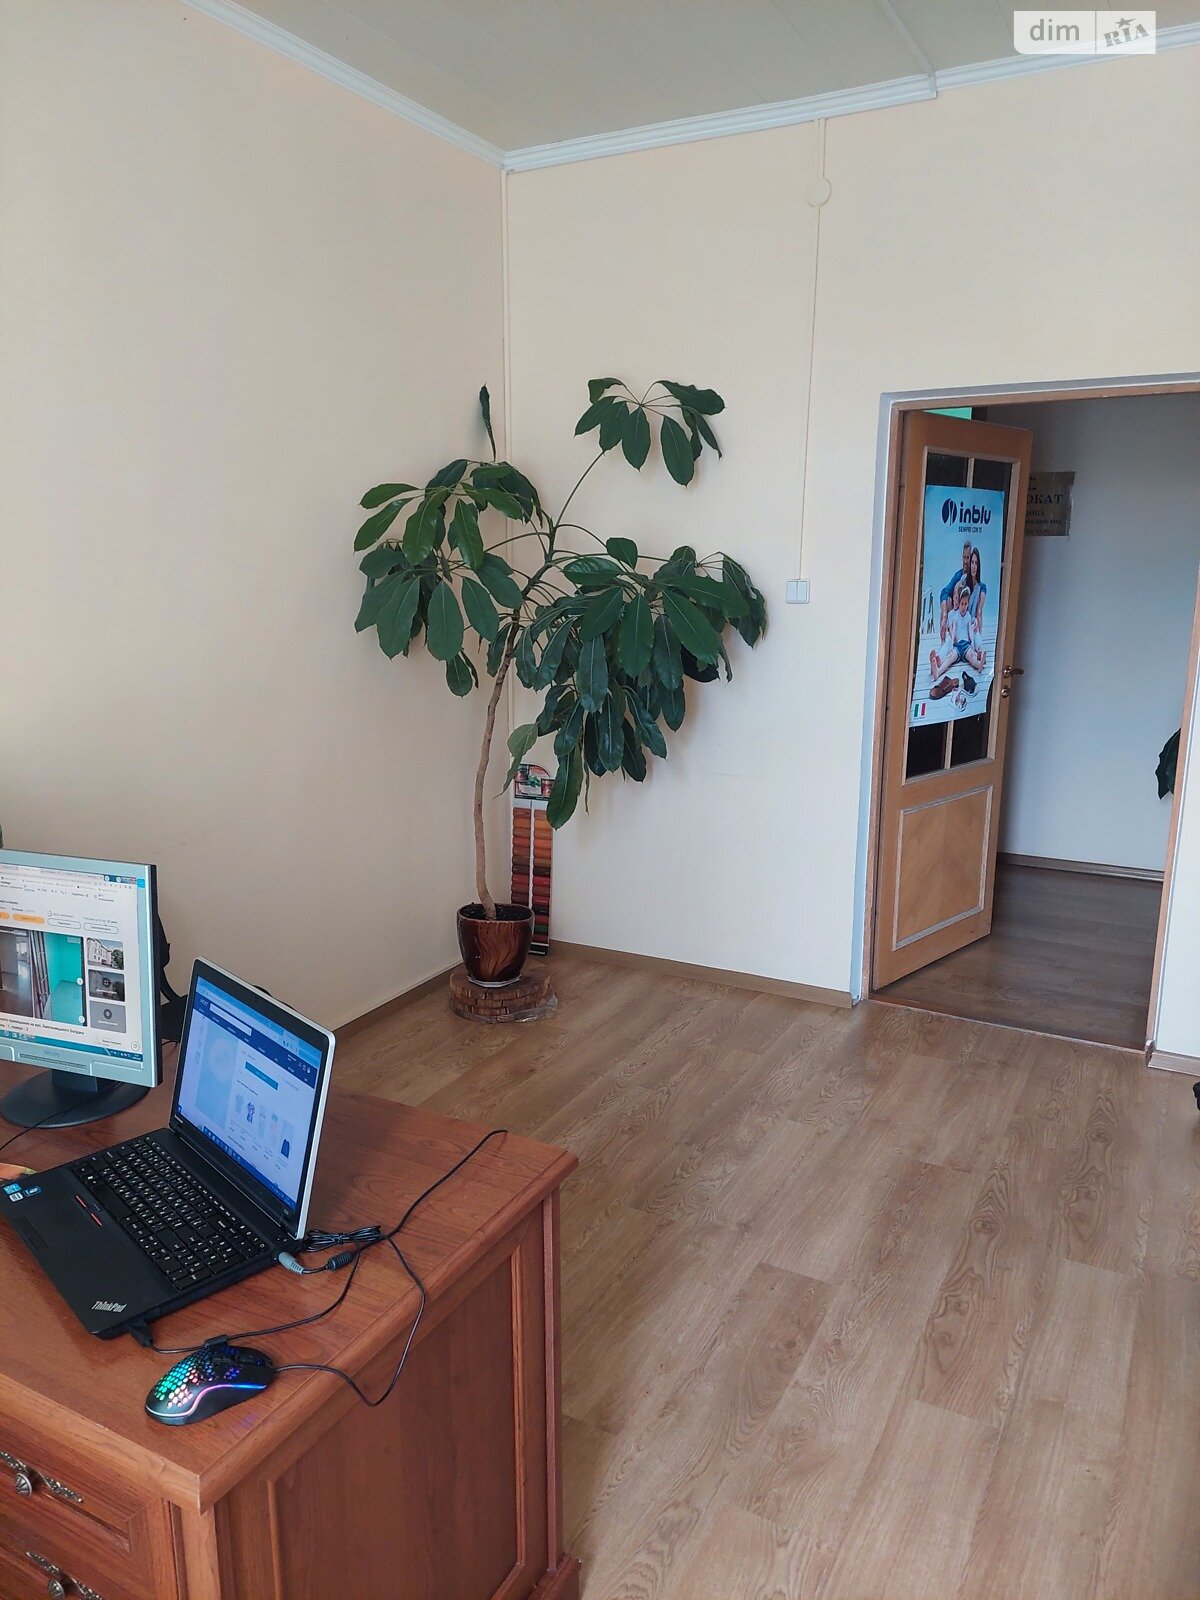 Аренда офисного помещения в Тернополе, Хмельницкого Богдана улица 18, помещений - 1, этаж - 2 фото 1